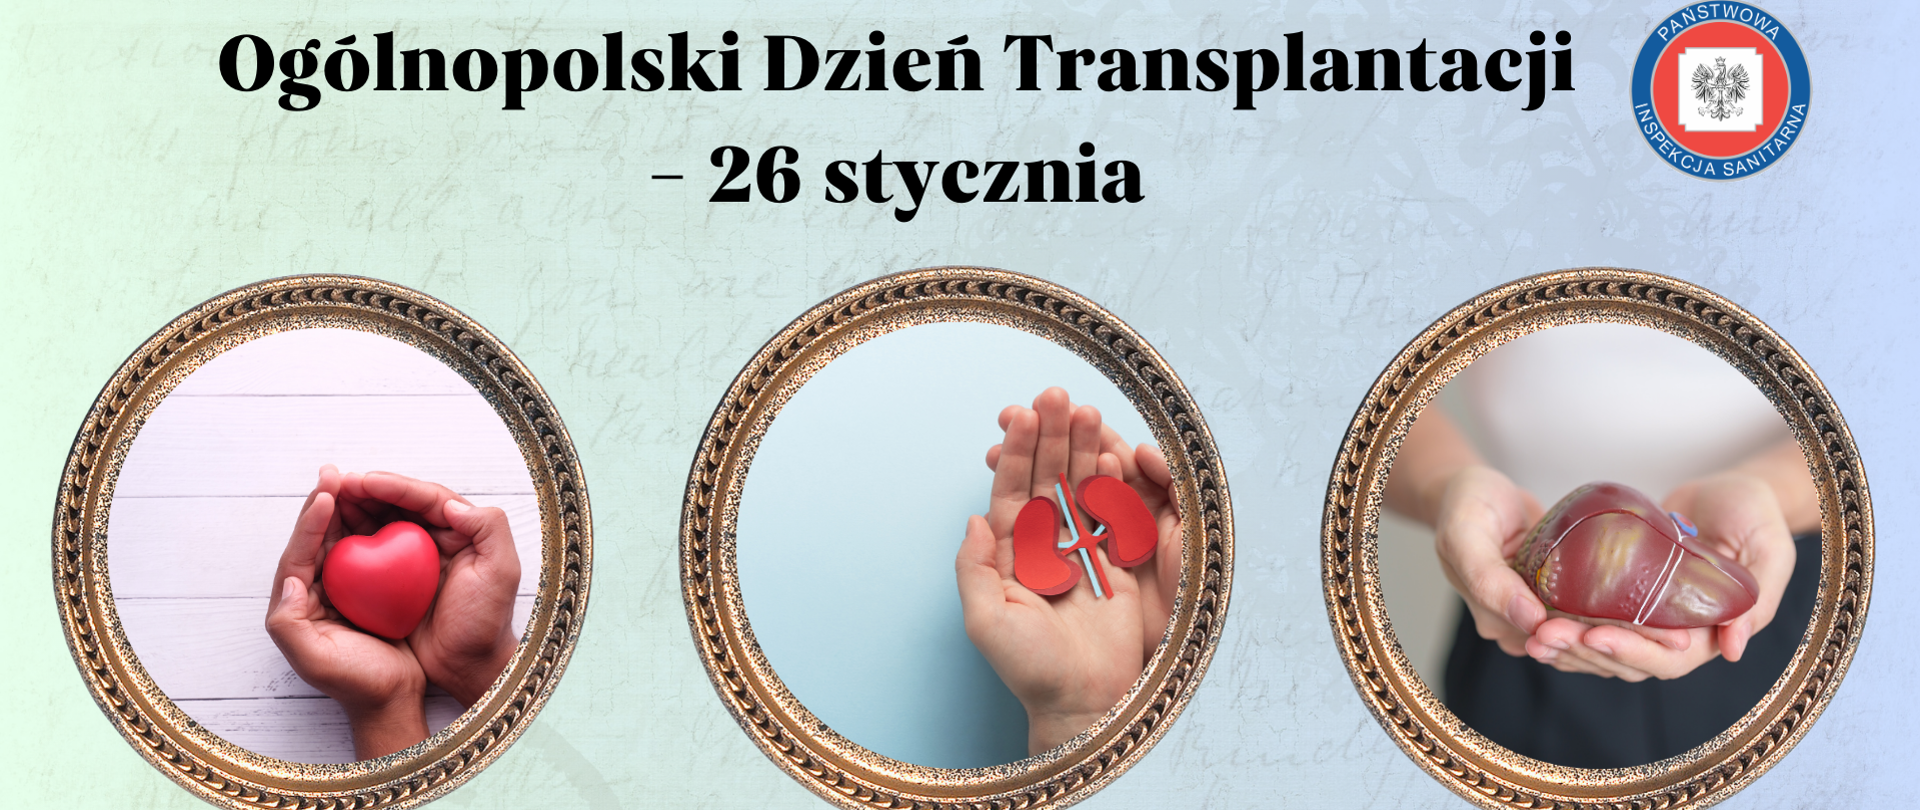 Infografika promuje Ogólnopolski Dzień Transplantacji, na pierwszym planie - przeszczep serca, nerki i wątroby